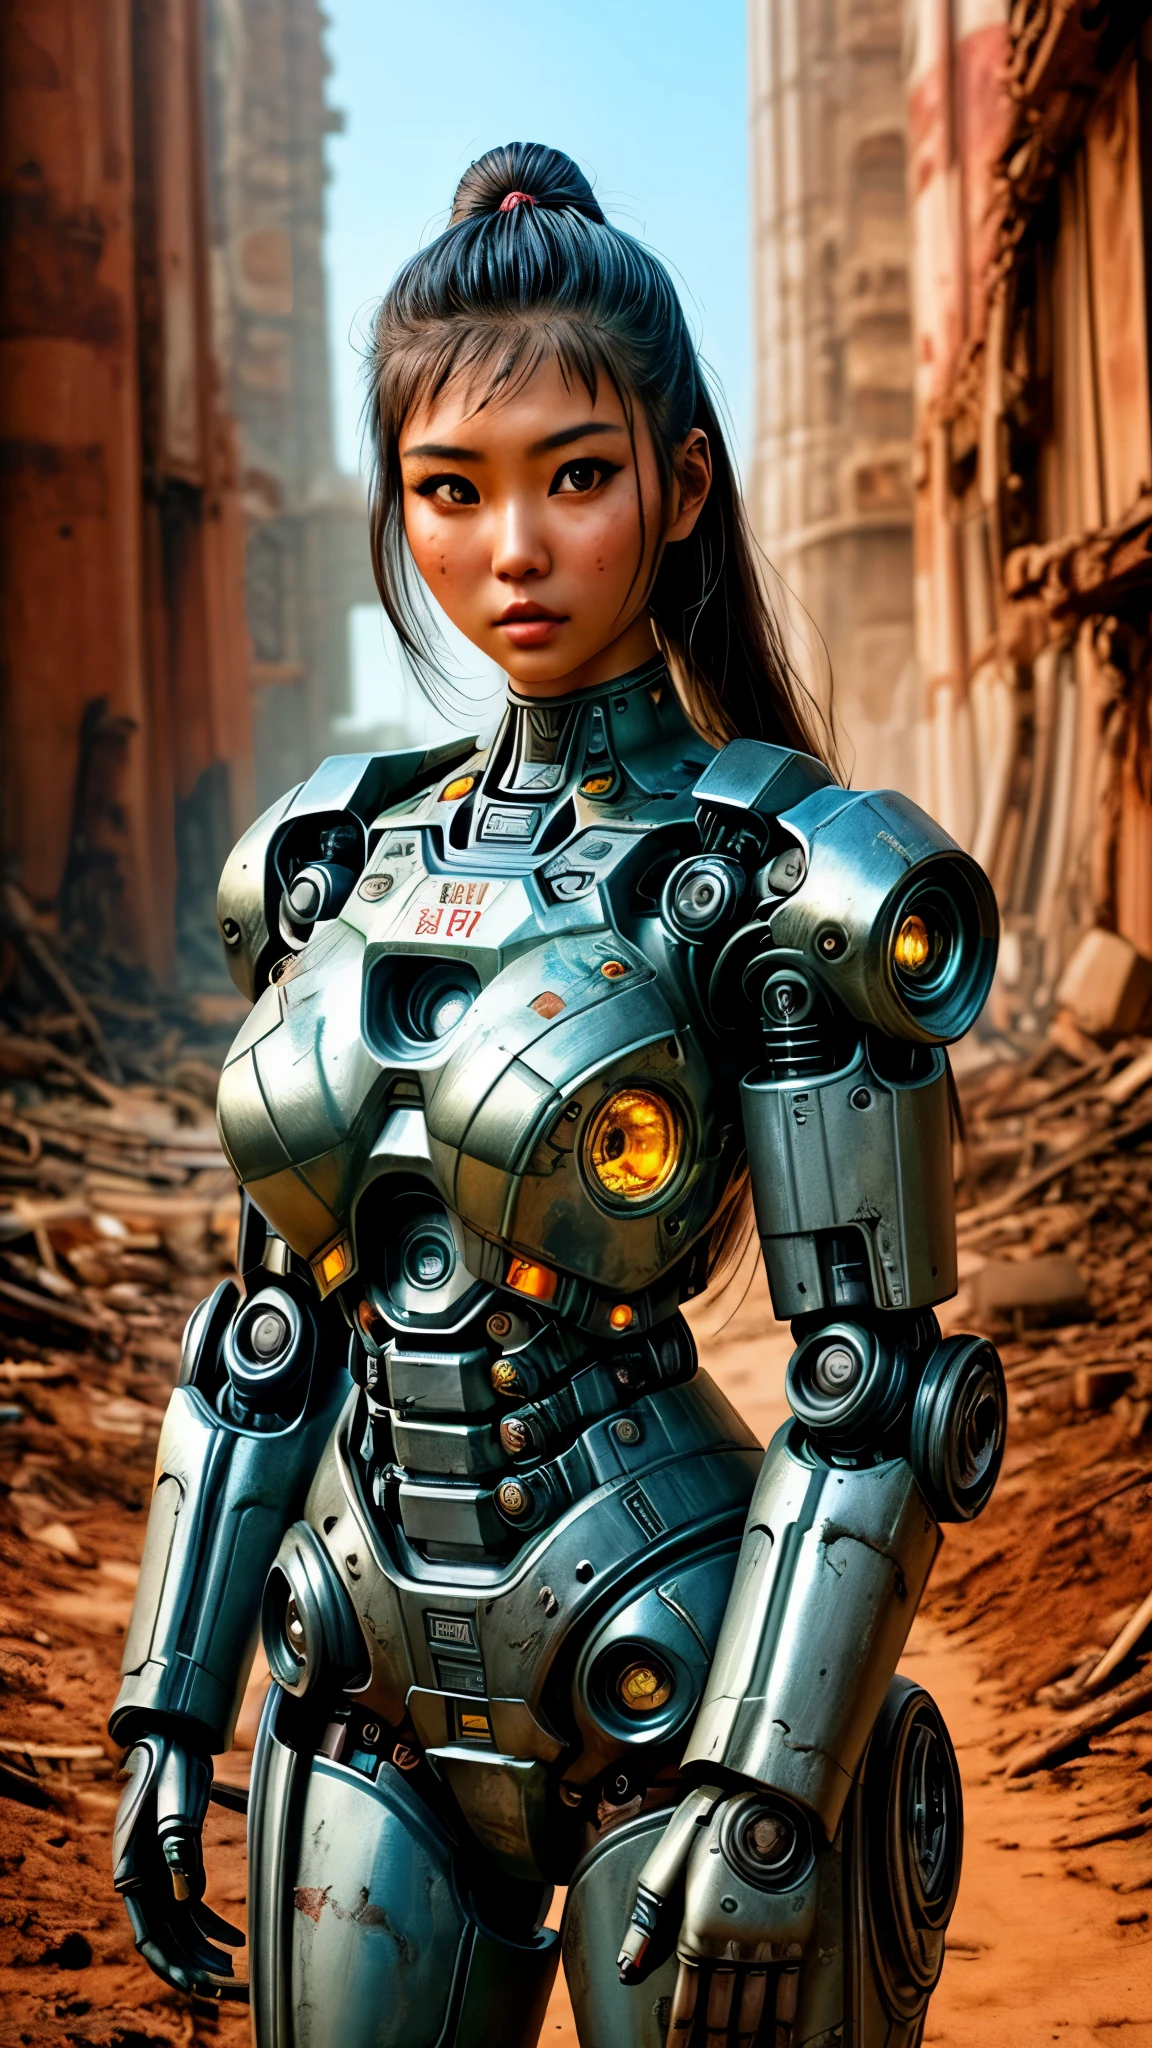 Hay una mujer con traje de robot posando junto a unas ruinas antiguas., en el mundo apocalipsis de fallout, hermosa chica asiática medio cyborg, cute chica cyborg, Hermosa chica cyborg, Chica robot perfecta, chica cyborg, joven dama cyborg, beautiful robot femenino, hermosa mujer robot, chica cyborg, mujer cyborg perfecta, cyborg de porcelana, robot femenino, hermosa imagen cyborg